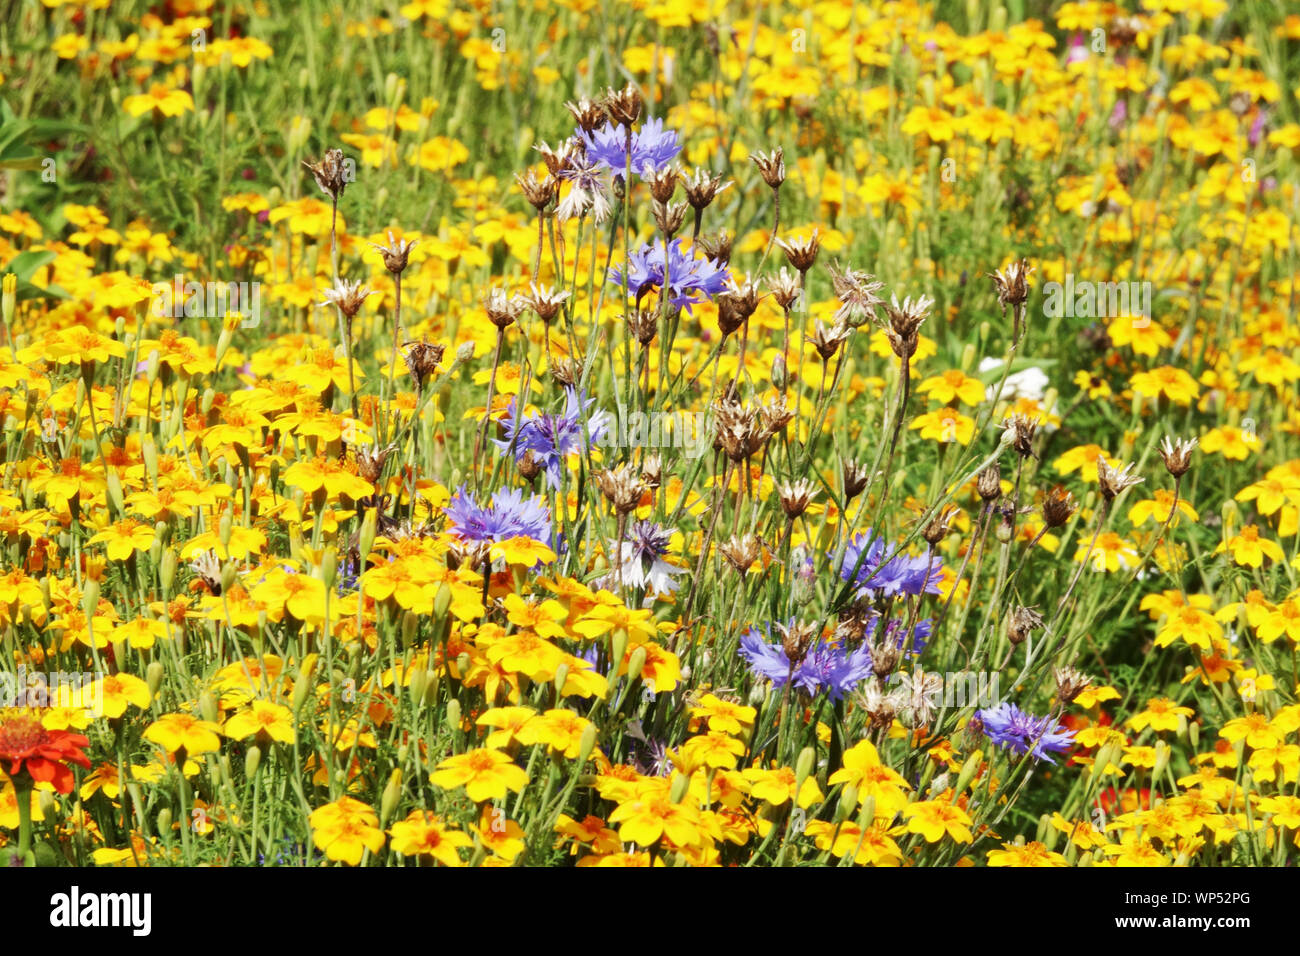 Estate fiori da giardino, Blu Bachelor del pulsante centaurea cyanus, giallo tagetes, Le calendule Foto Stock